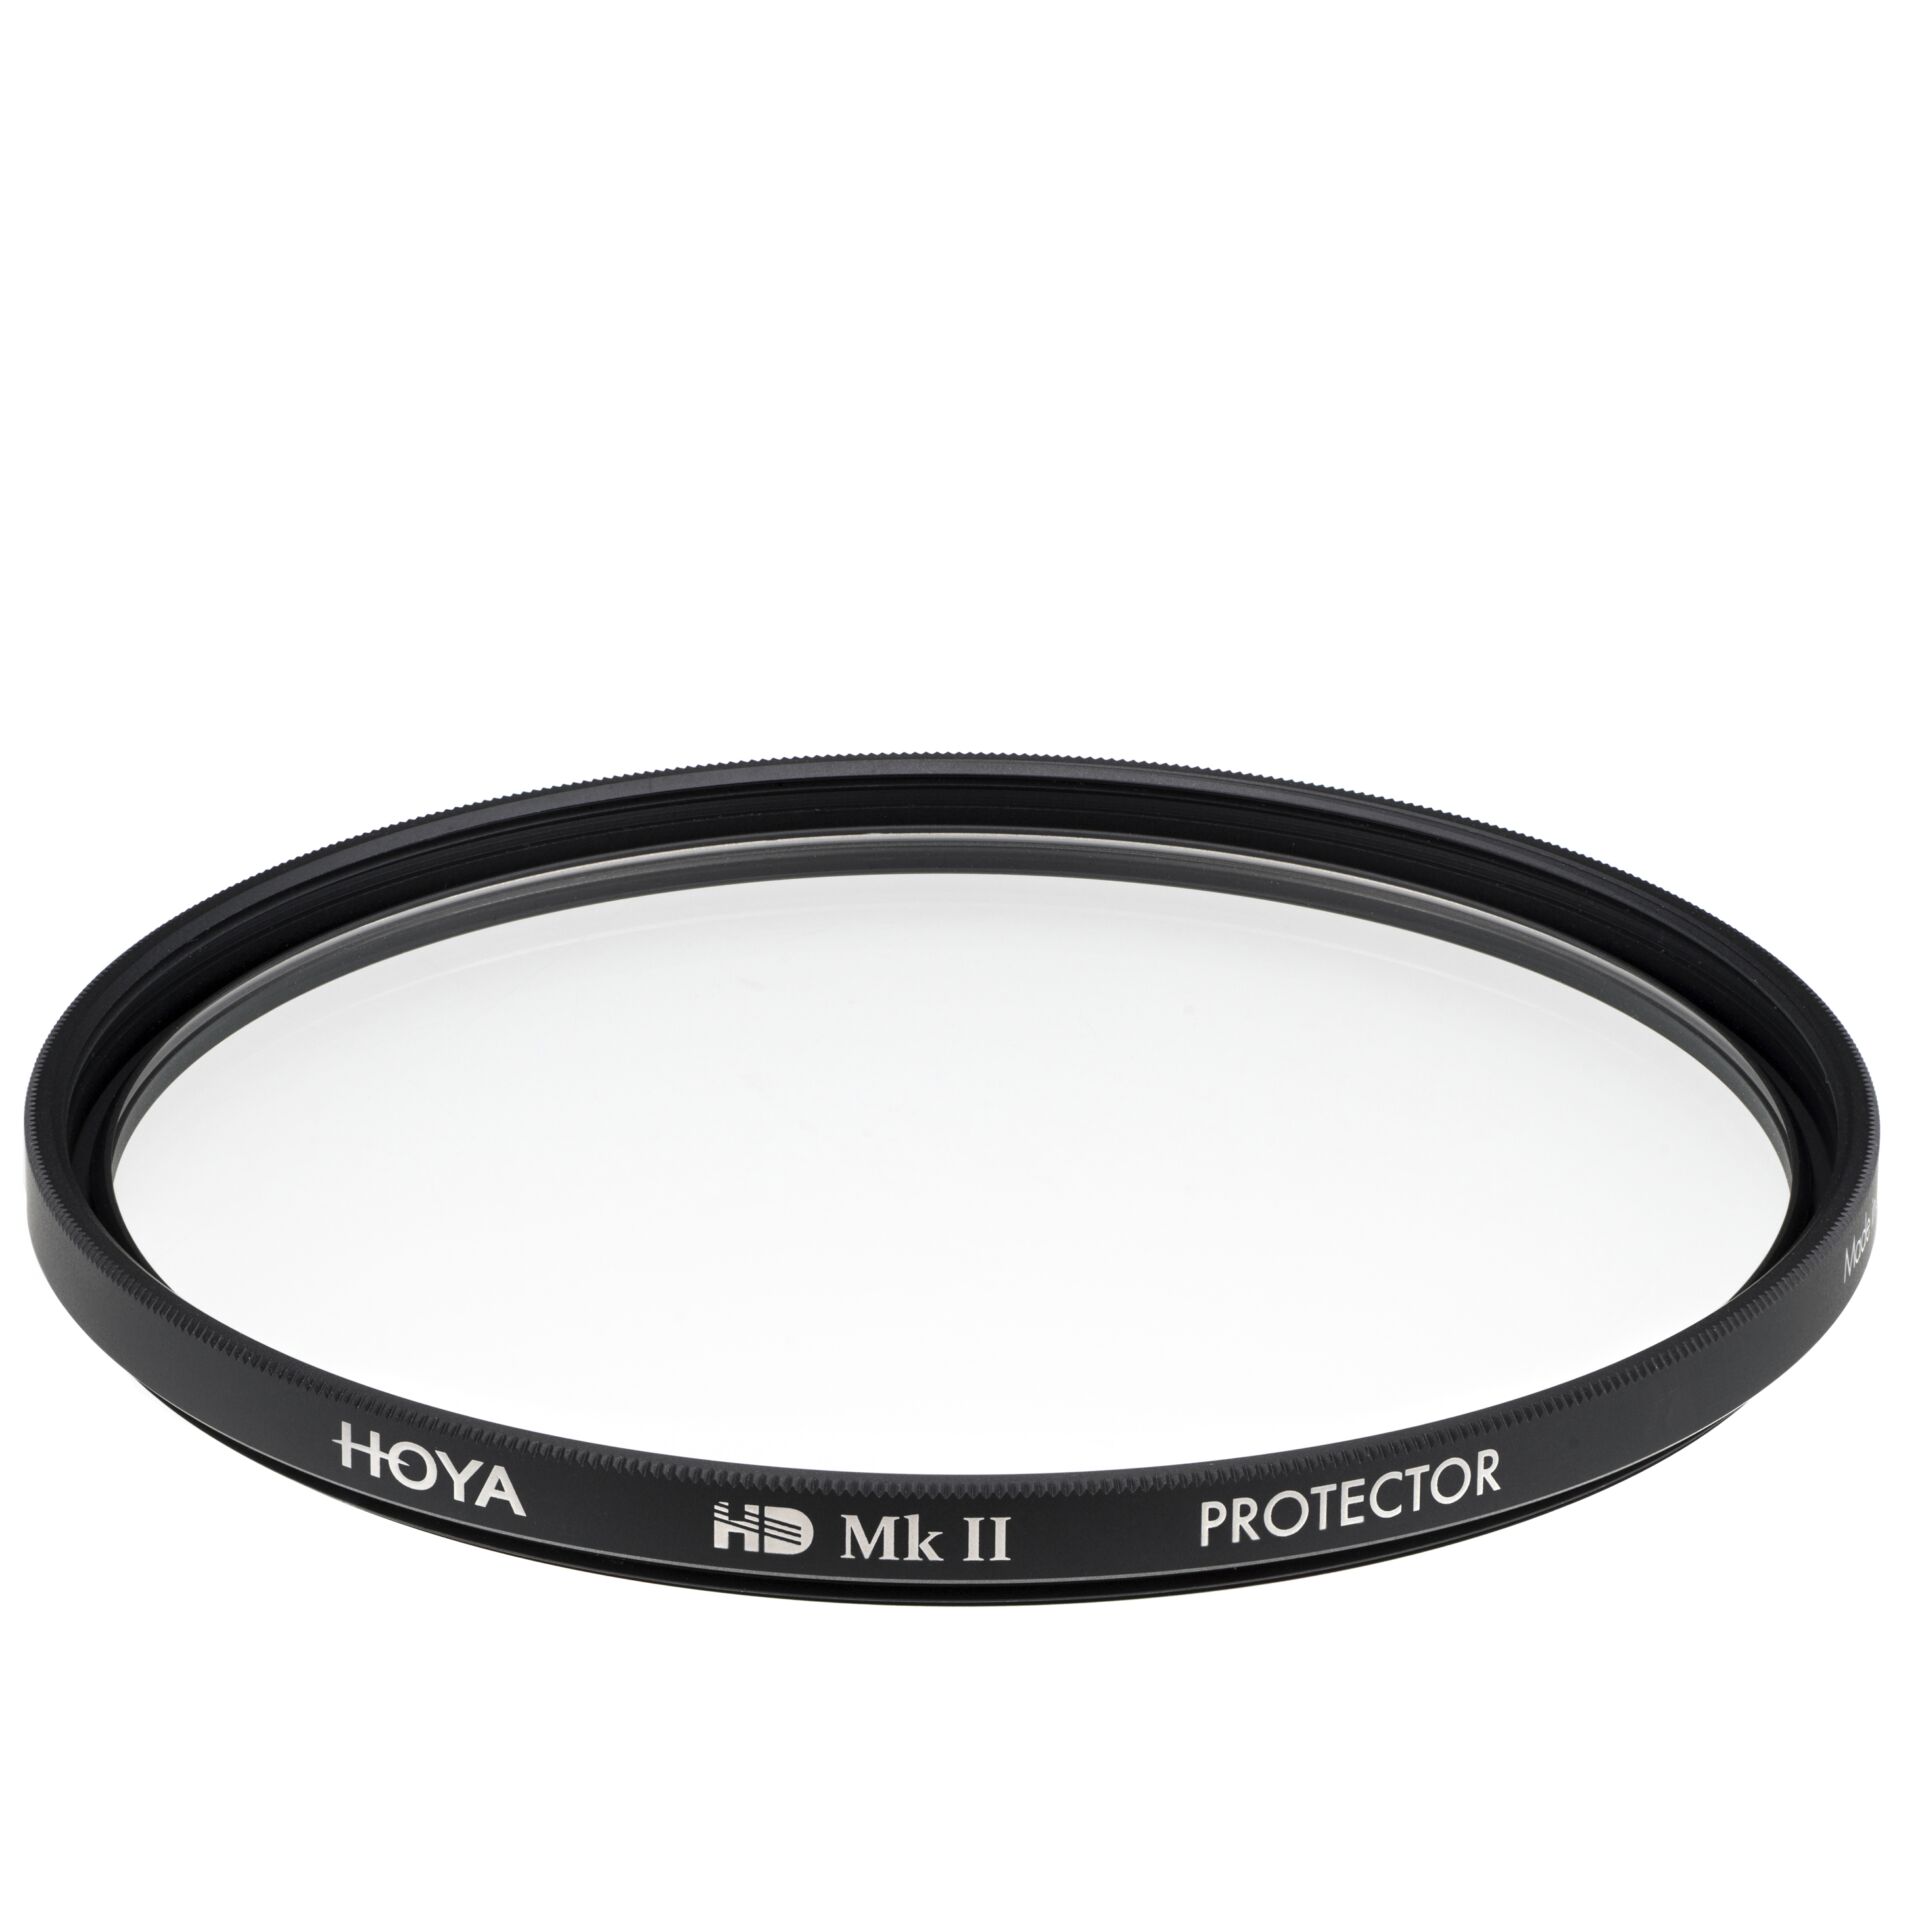 Hoya Protector HD Mk II 77mm